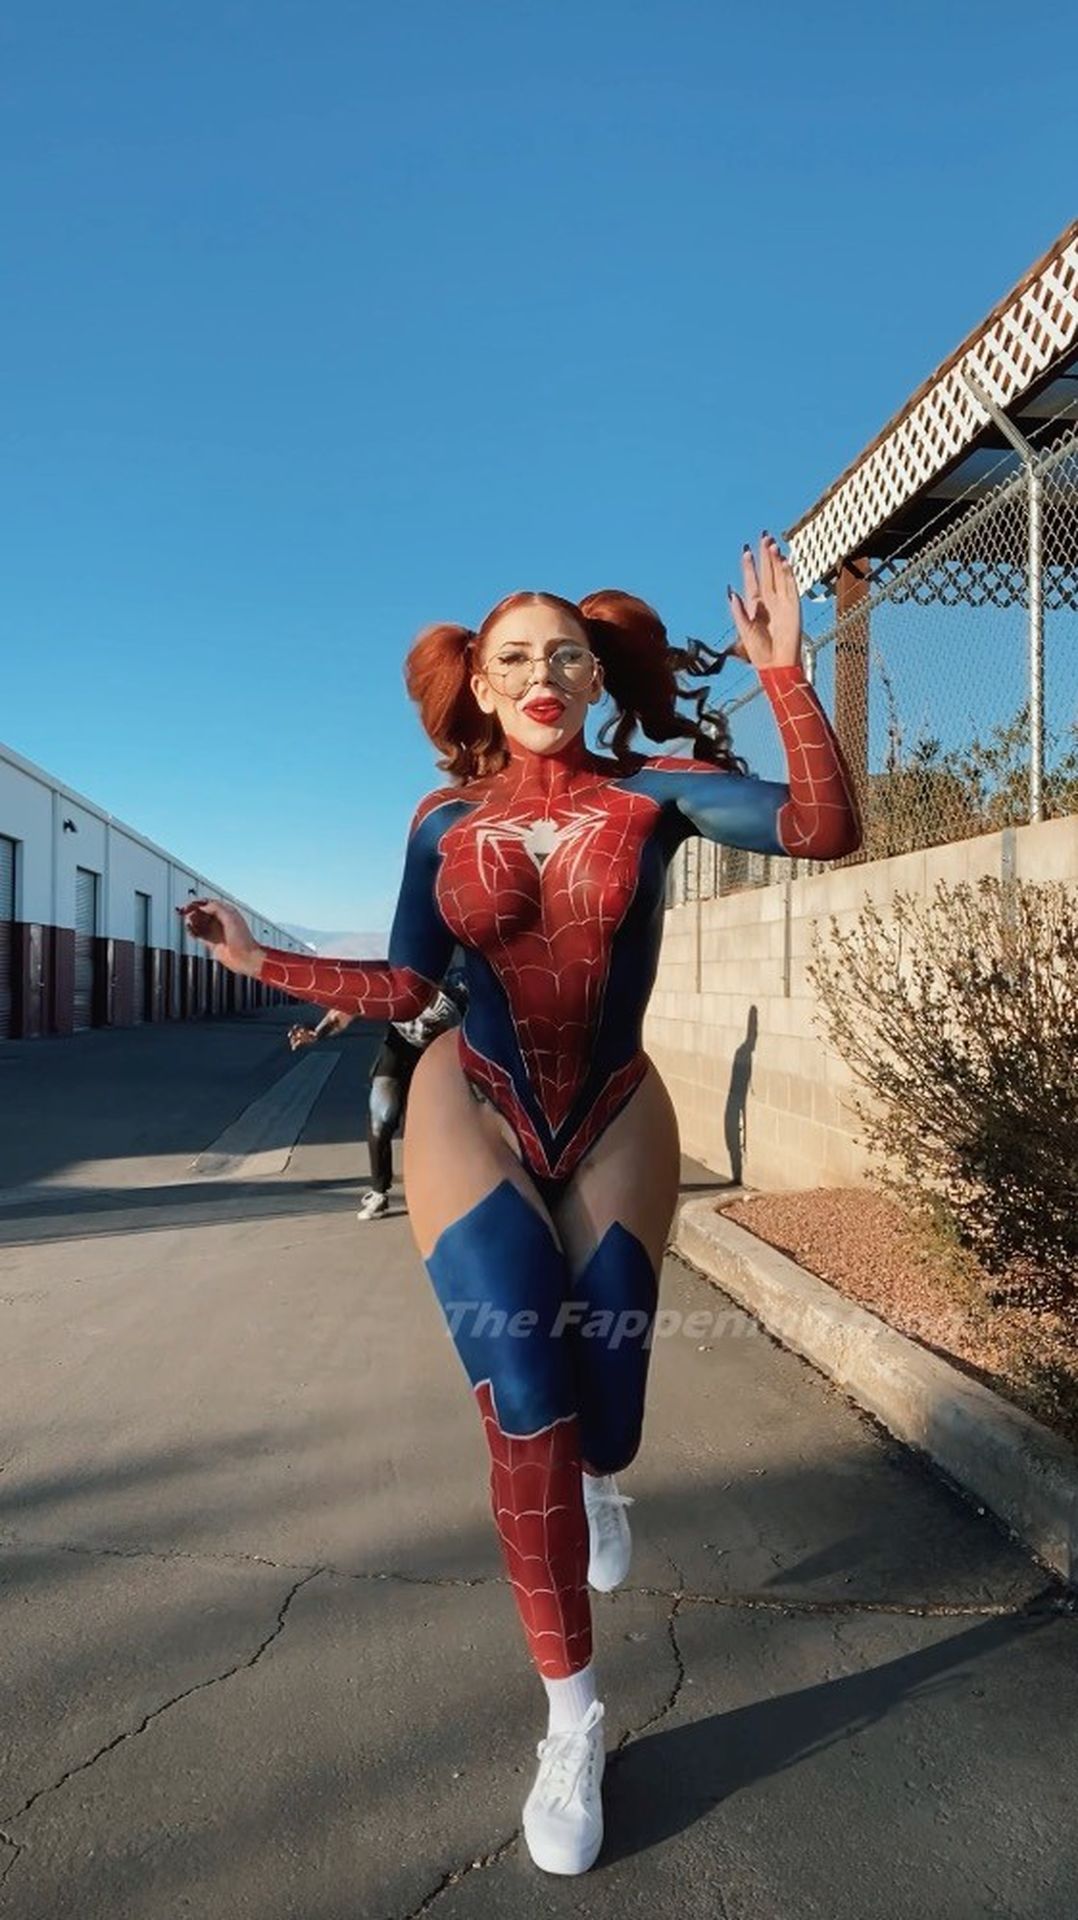 Amanda Nicole Transforms Into Real-life Spider Babe (17 Photos)